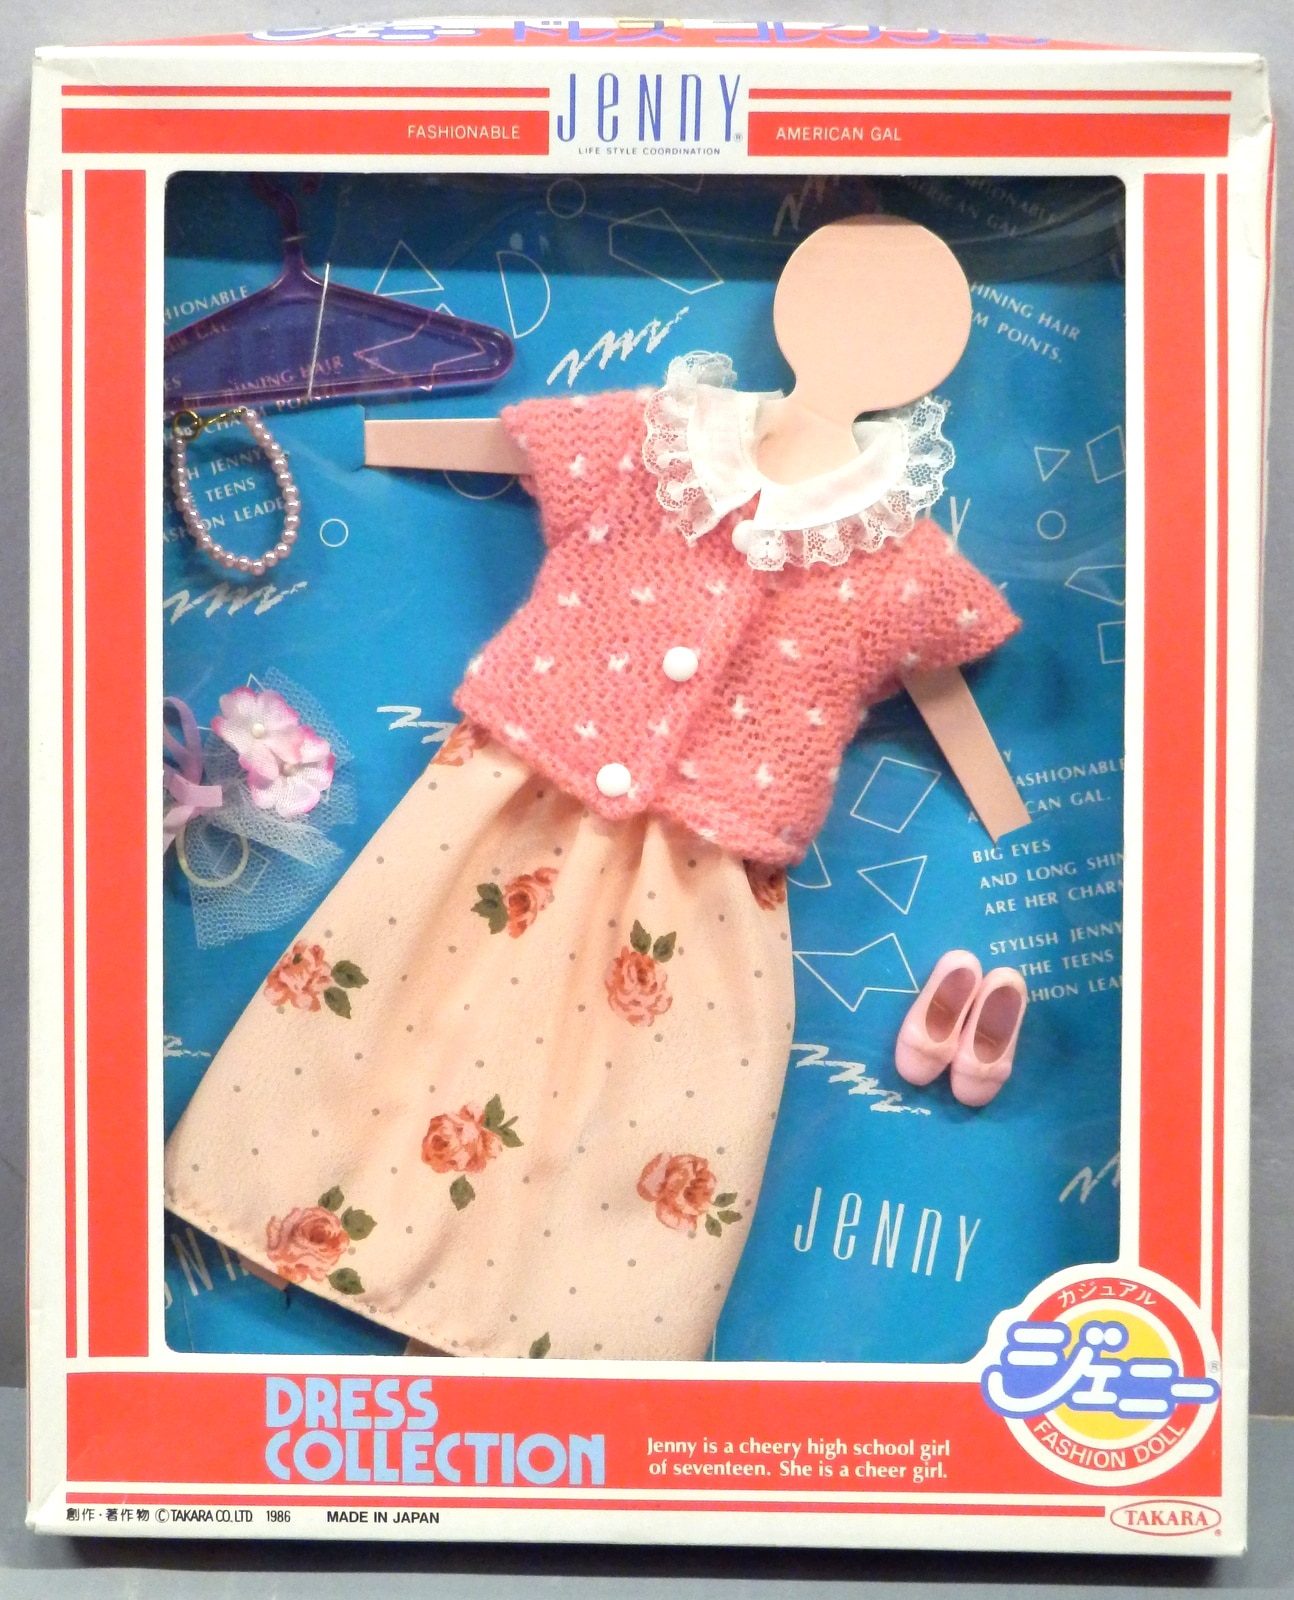 ジェニー ドレスコレクション - おもちゃ